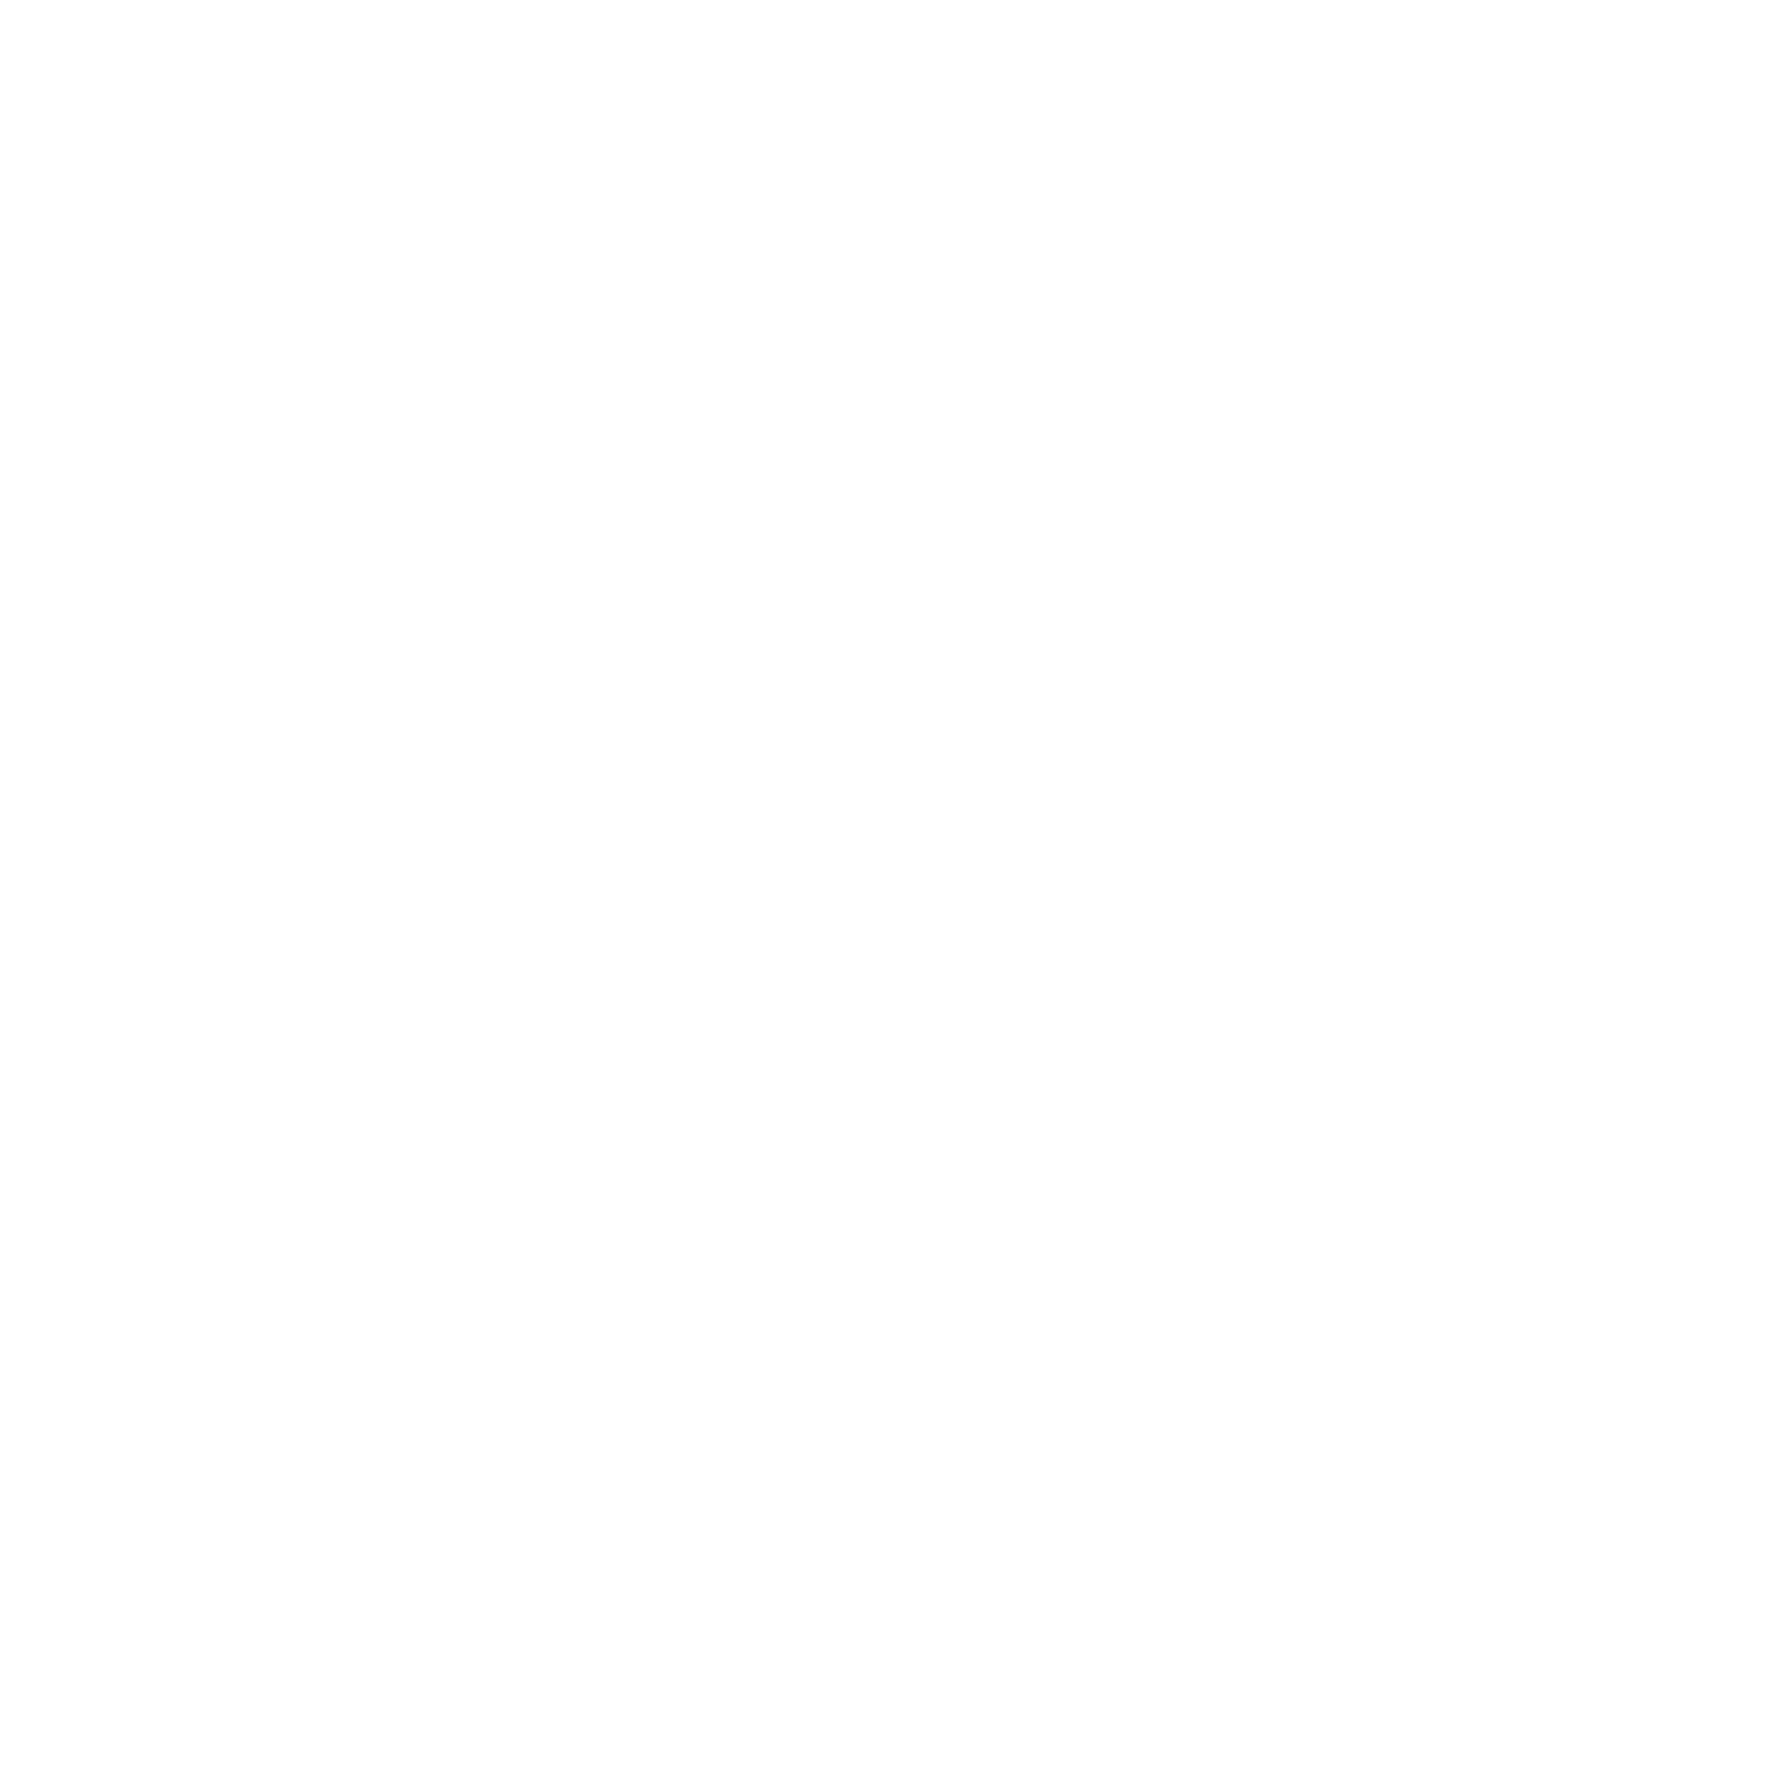 Hoi Polloy